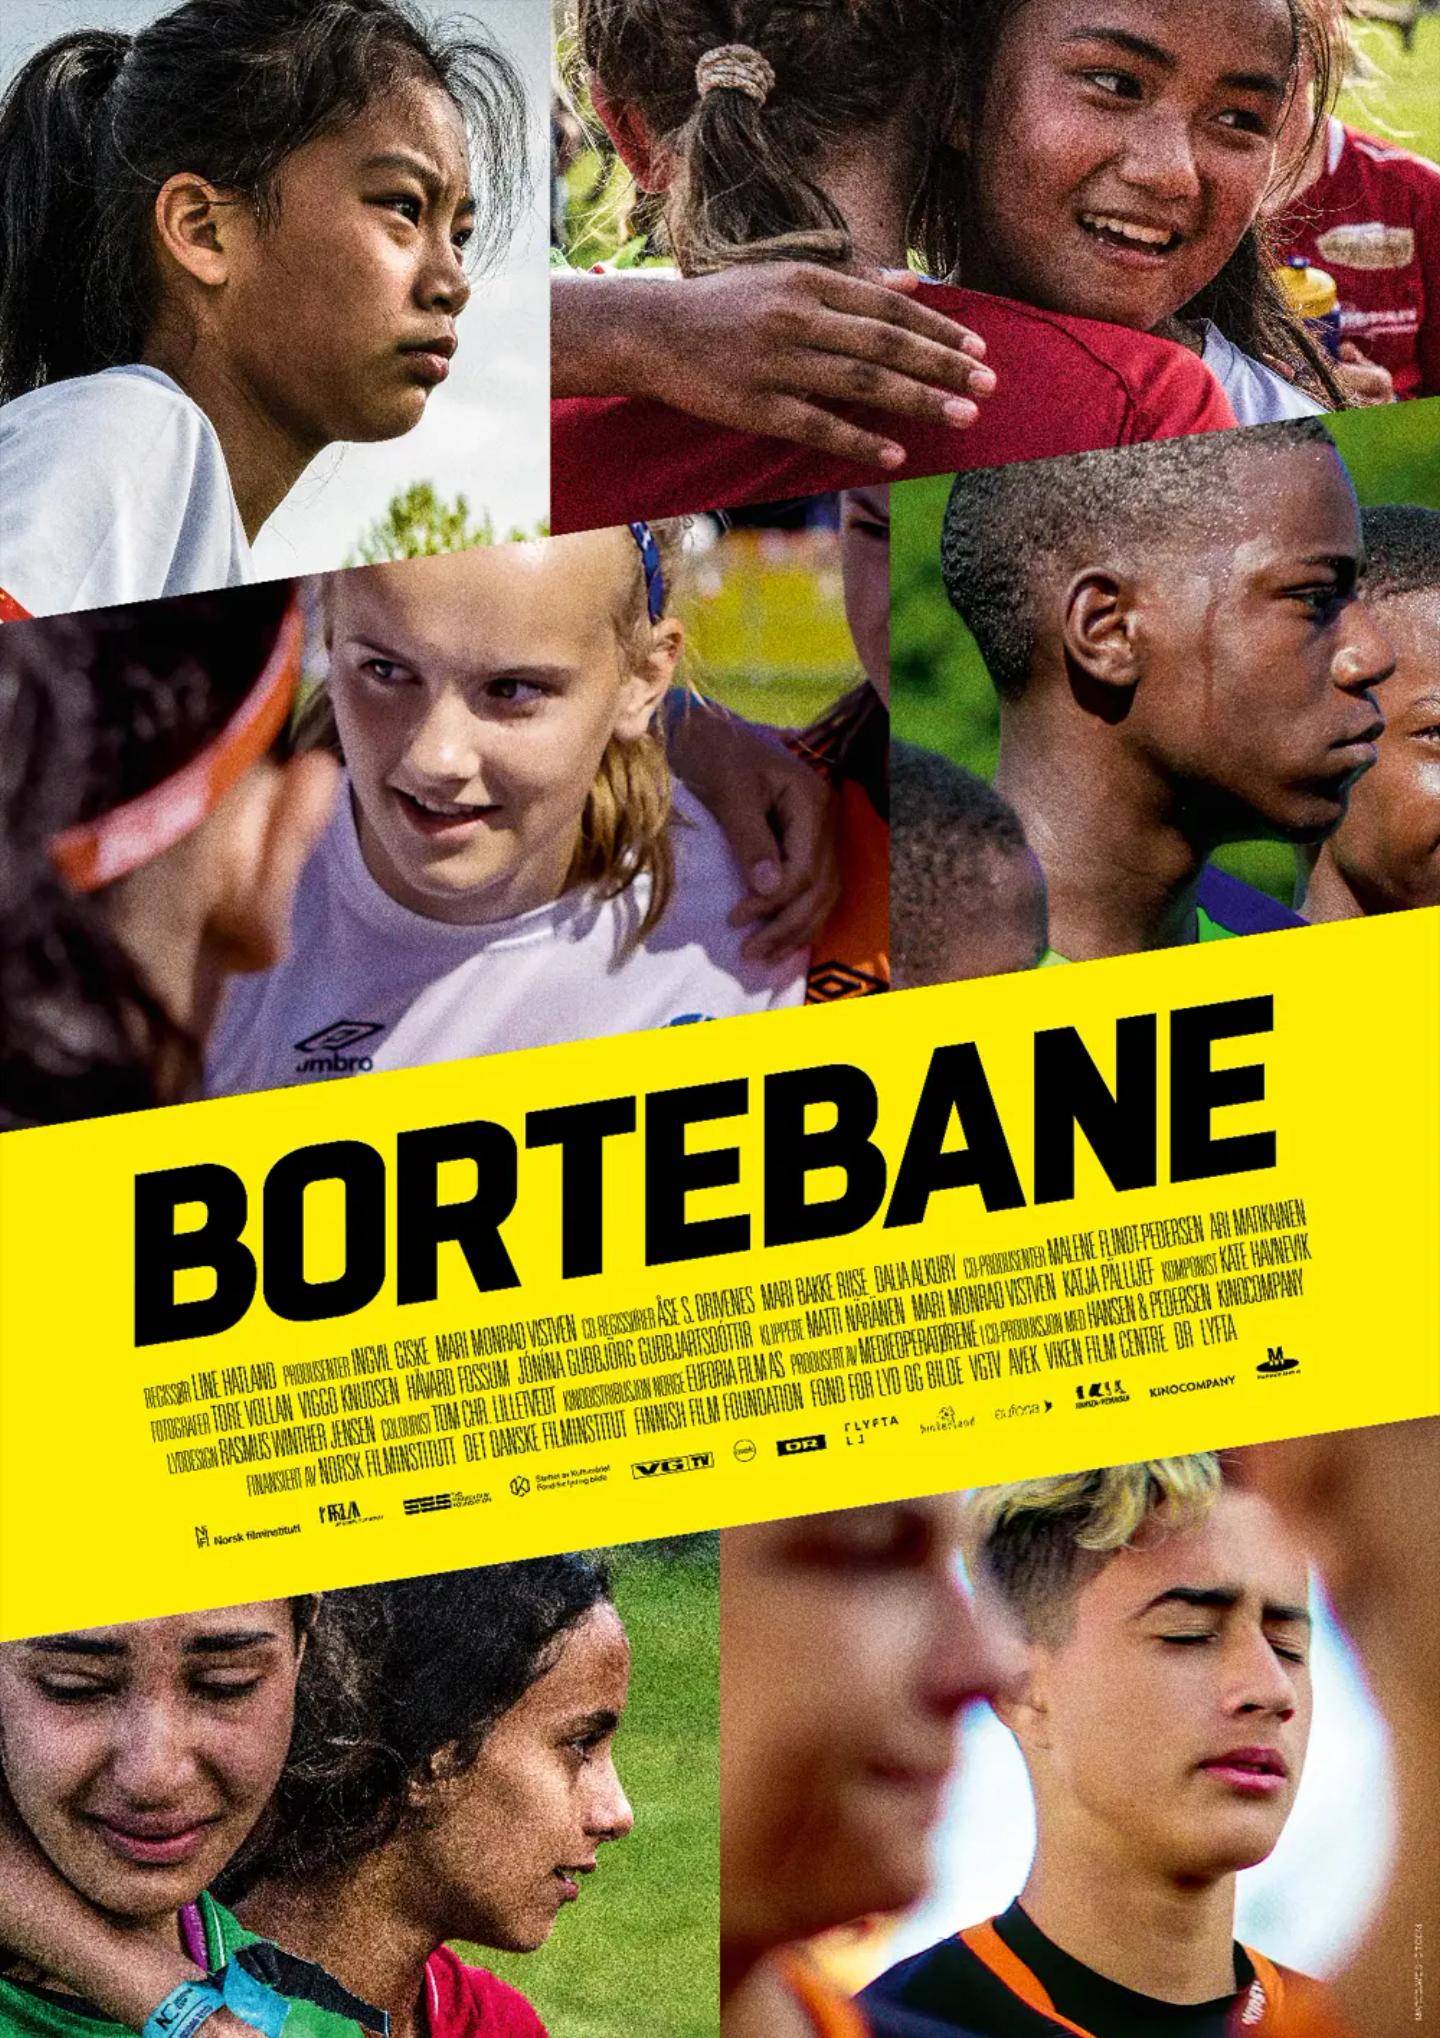 Plakat for 'Bortebane'